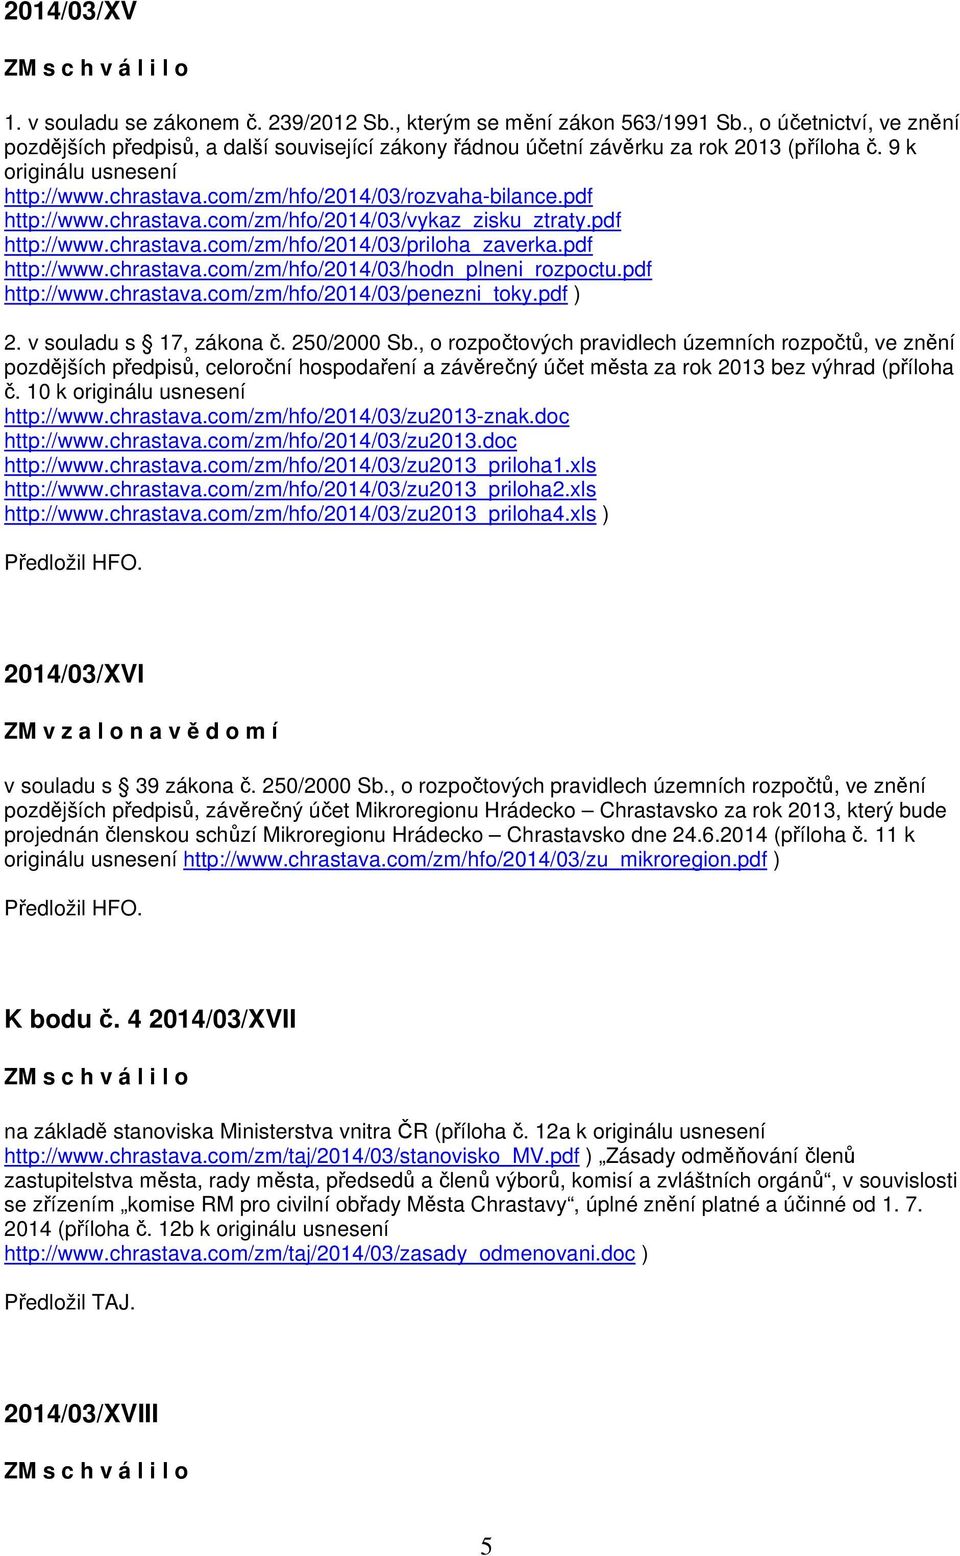 pdf http://www.chrastava.com/zm/hfo/2014/03/vykaz_zisku_ztraty.pdf http://www.chrastava.com/zm/hfo/2014/03/priloha_zaverka.pdf http://www.chrastava.com/zm/hfo/2014/03/hodn_plneni_rozpoctu.